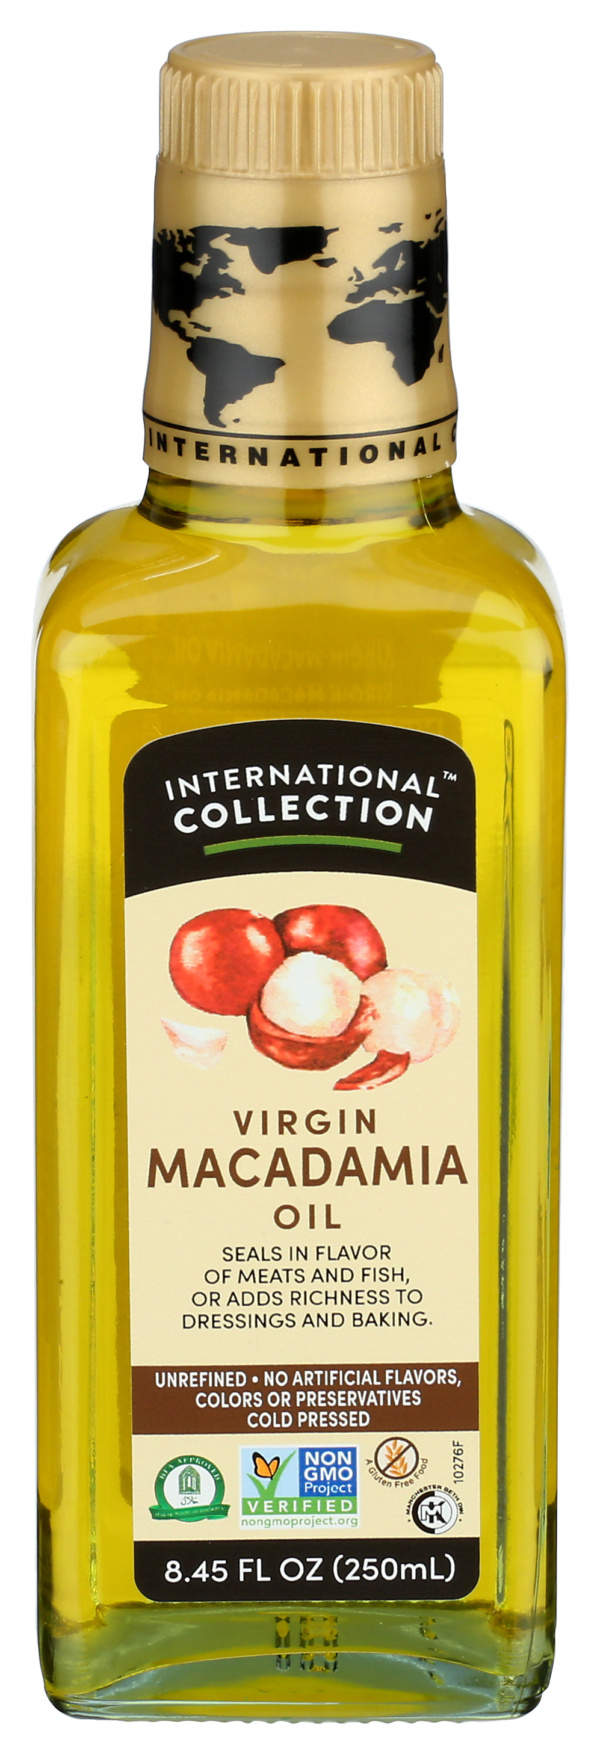 Virgin Macadamia Oil